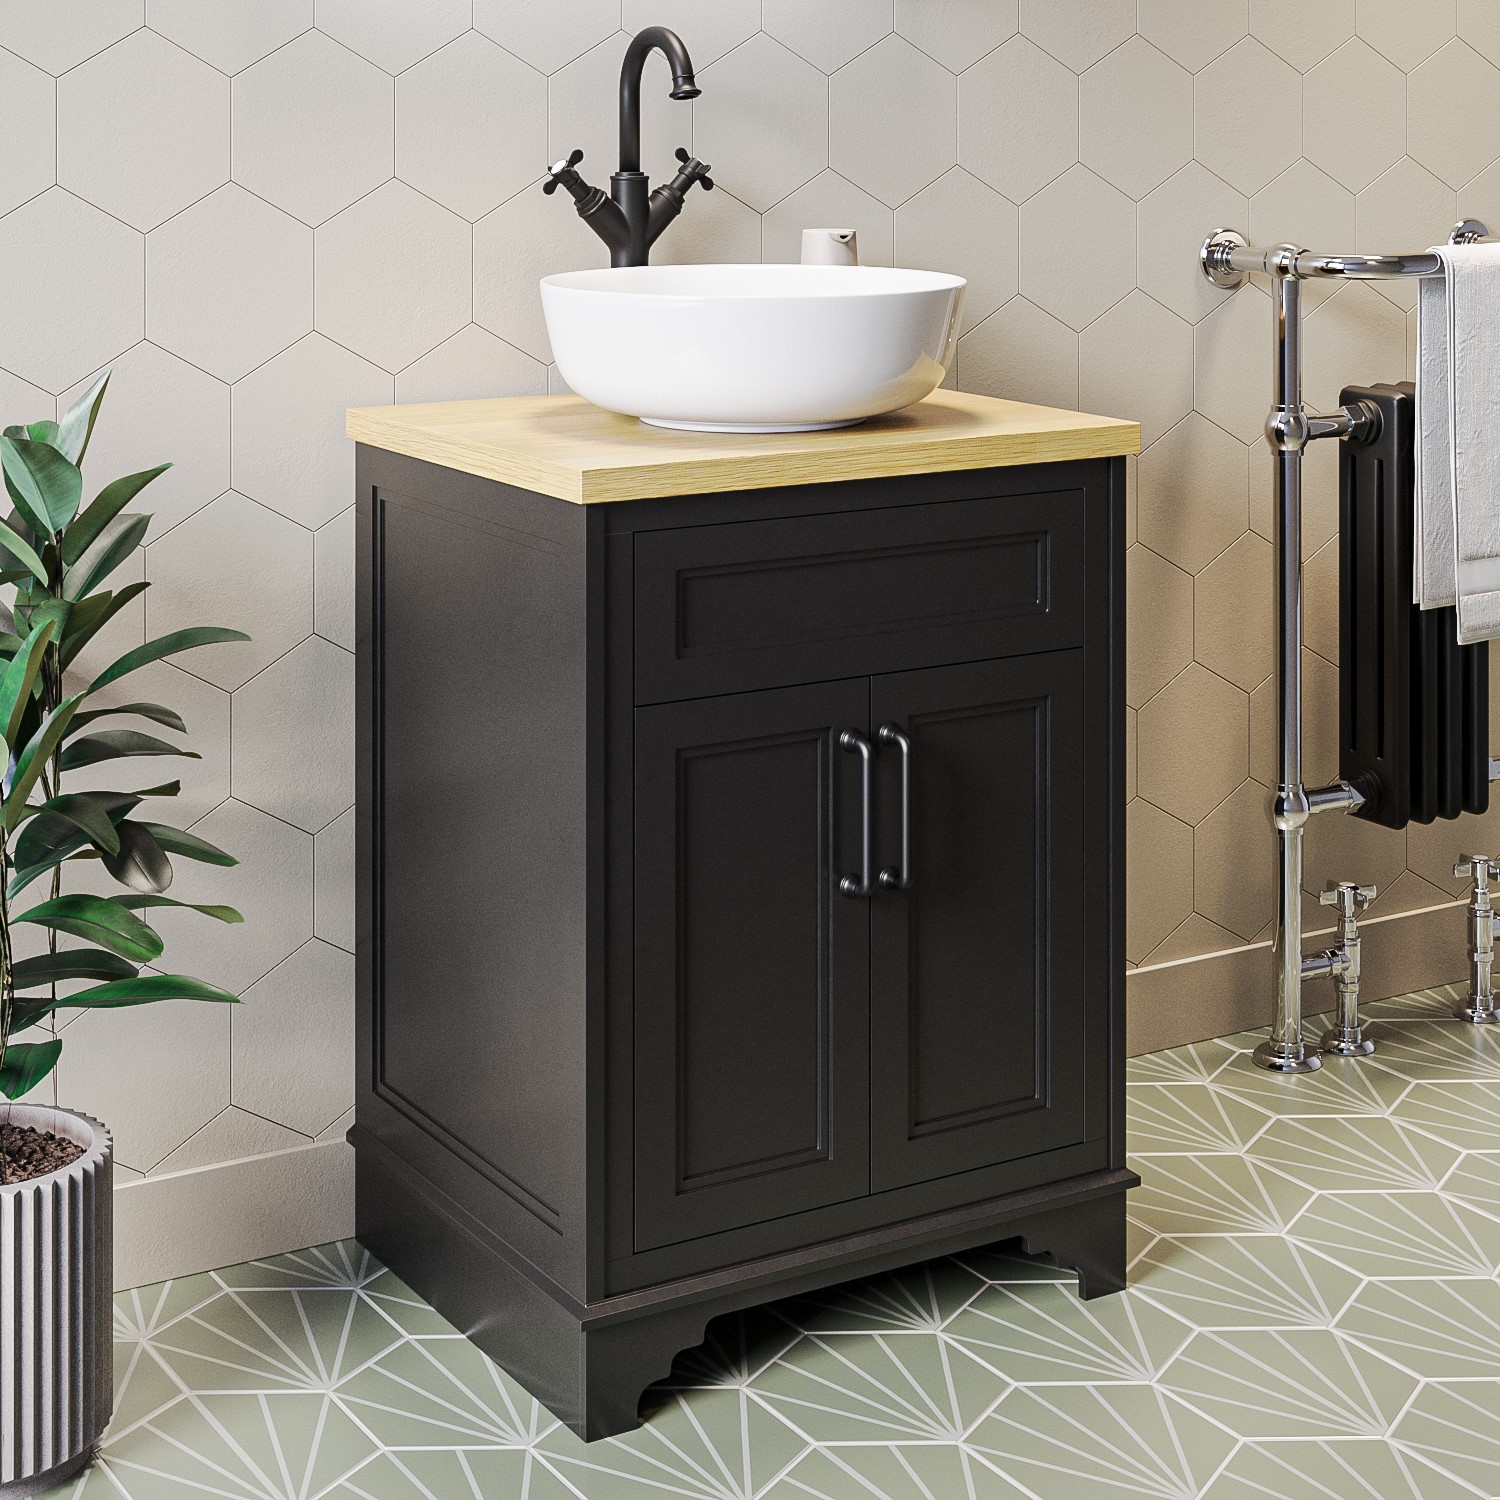 600mm Black Freestanding Countertop Vanity Unit With Basin Camden Better Bathrooms